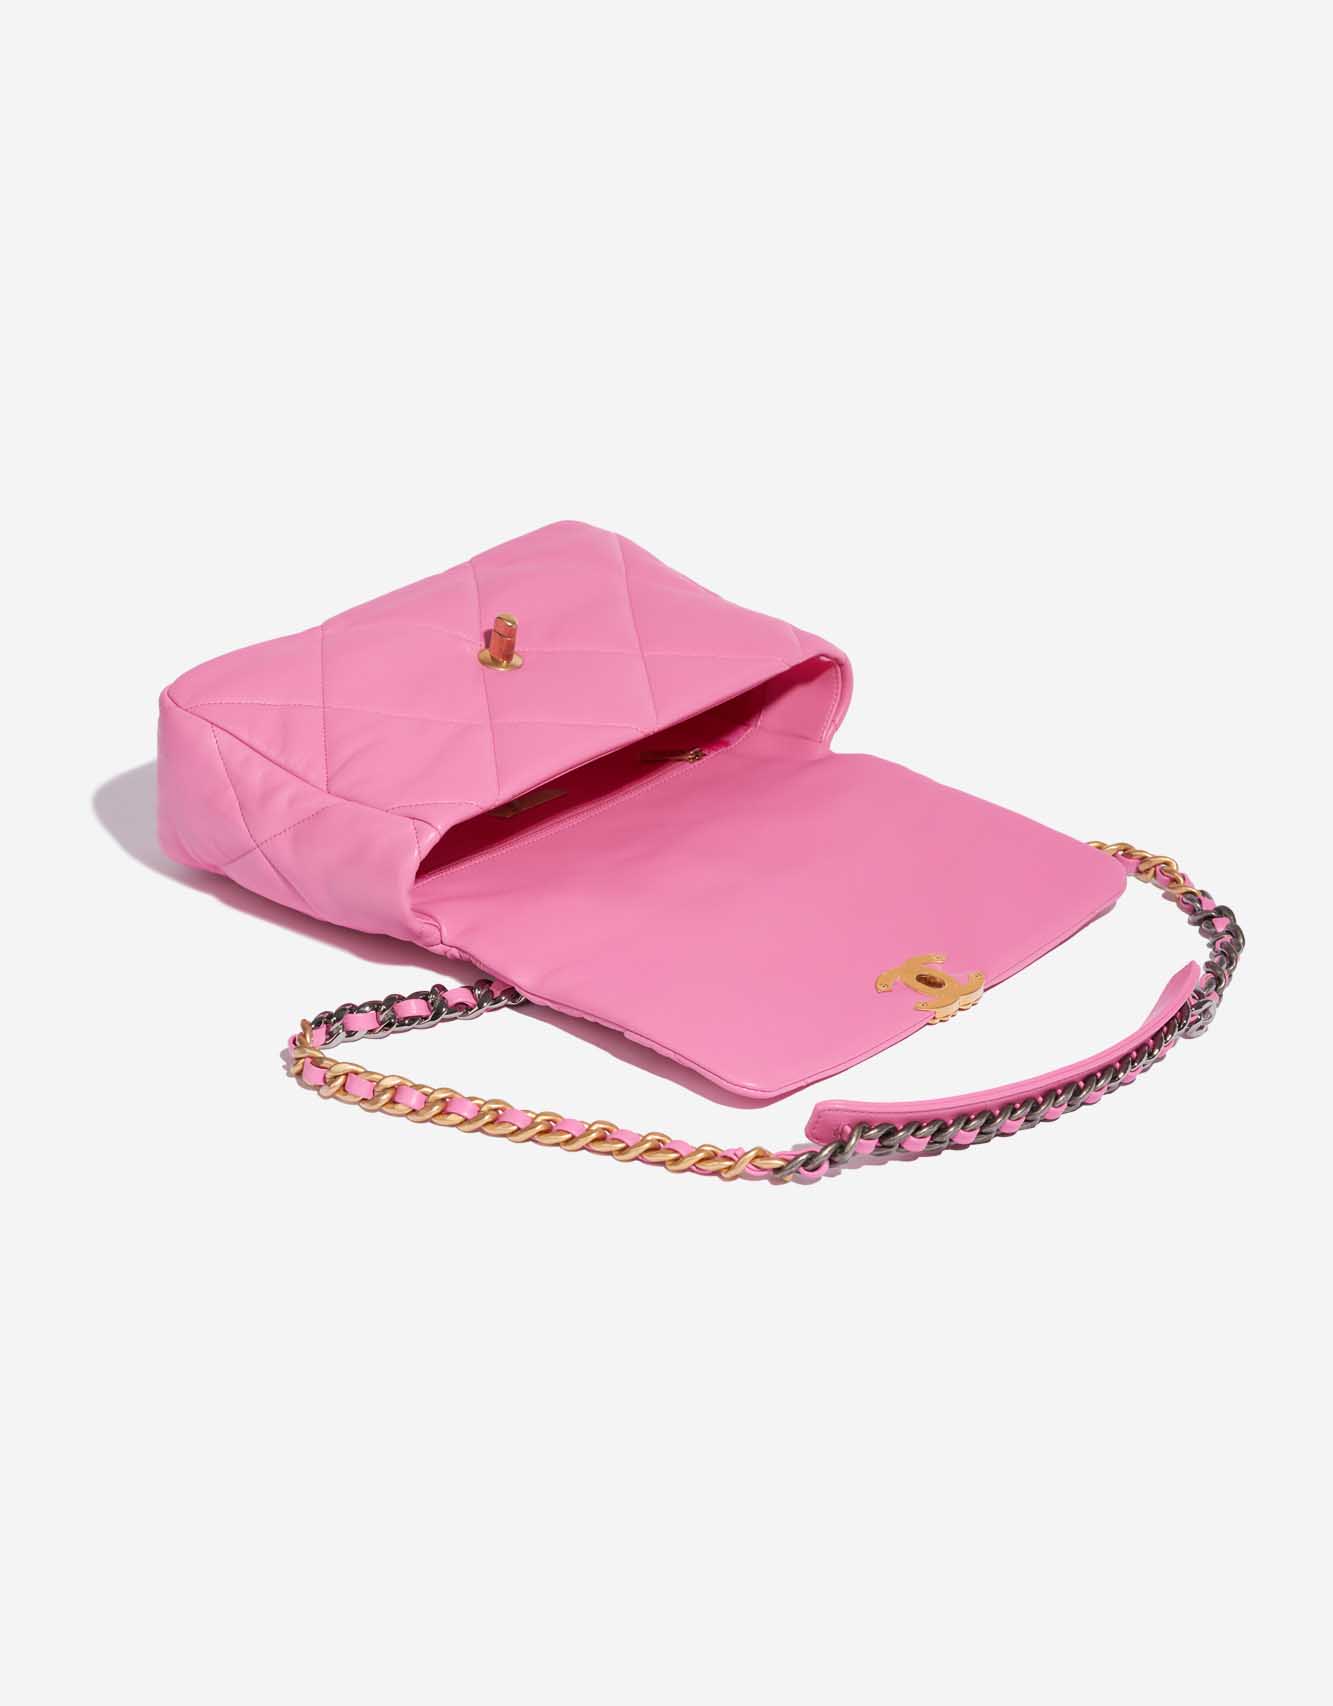 Pre-owned Chanel bag 19 Large Flap Bag Lamb Rose Rose Inside | Sell your designer bag on Saclab.com